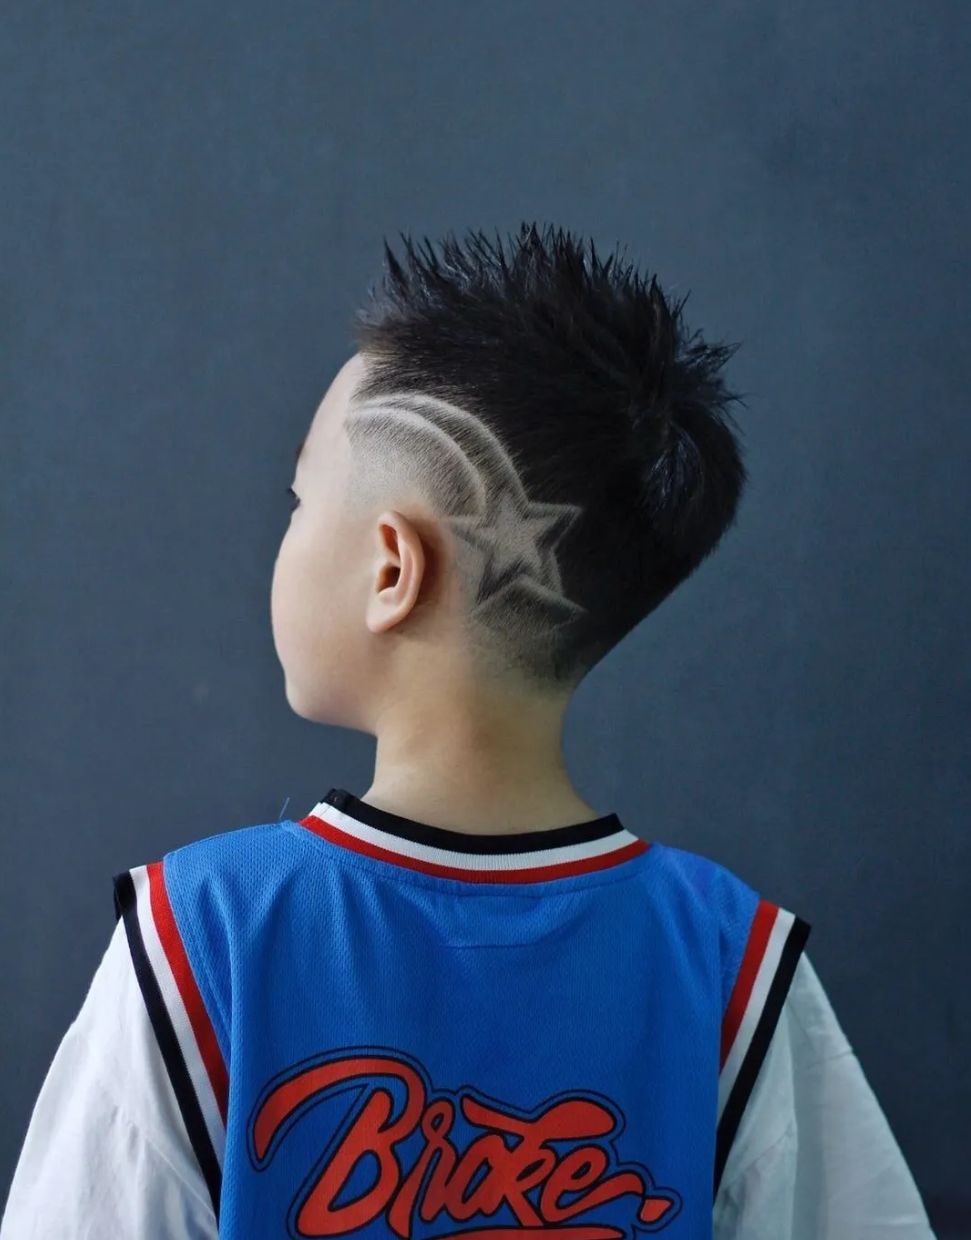 刻痕发型也是小男孩表达自身个性的一种发型,在当下可以说是很火很